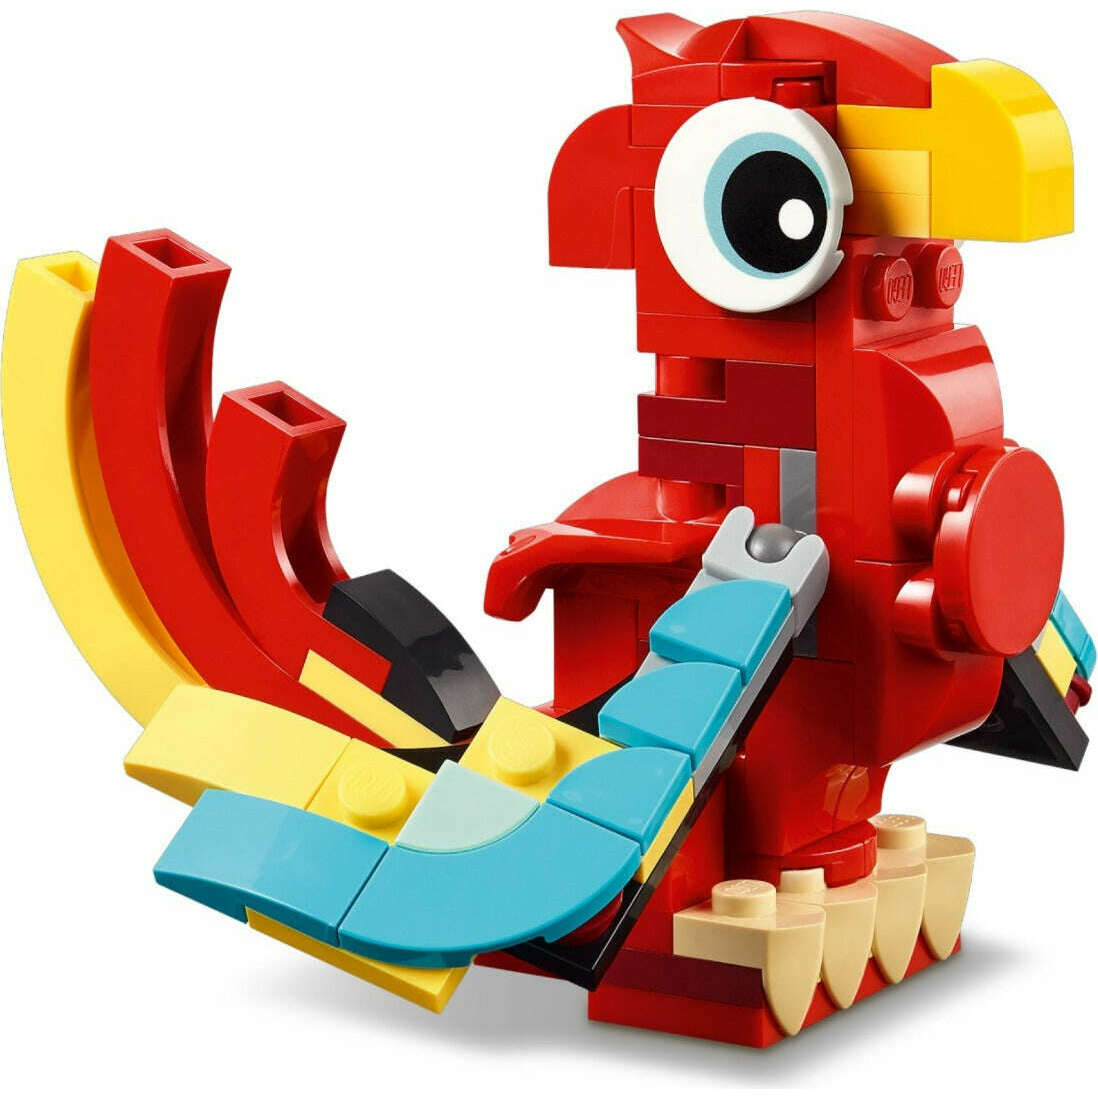 Toys N Tuck:Lego 31145 Creator Red Dragon,Lego Creator